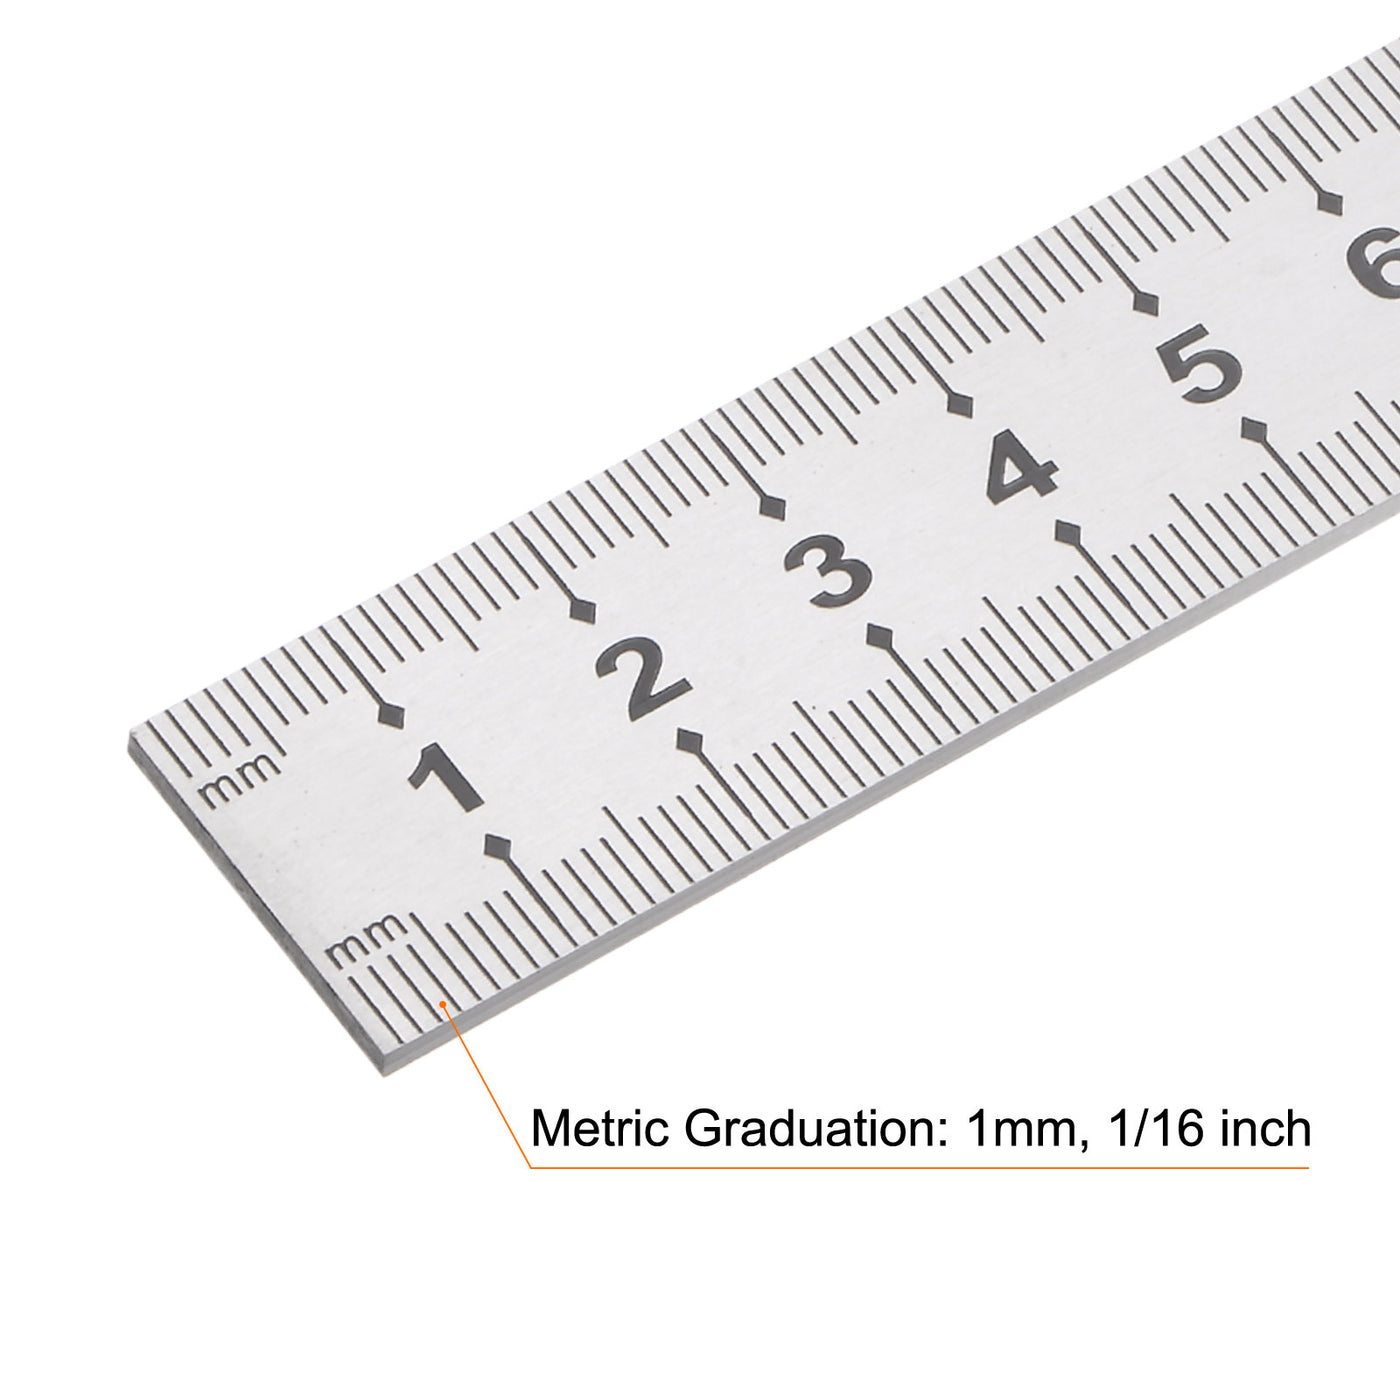 Harfington Stainless Steel Ruler, 40" Metal Rulers 0.79" Wide Metric Graduation